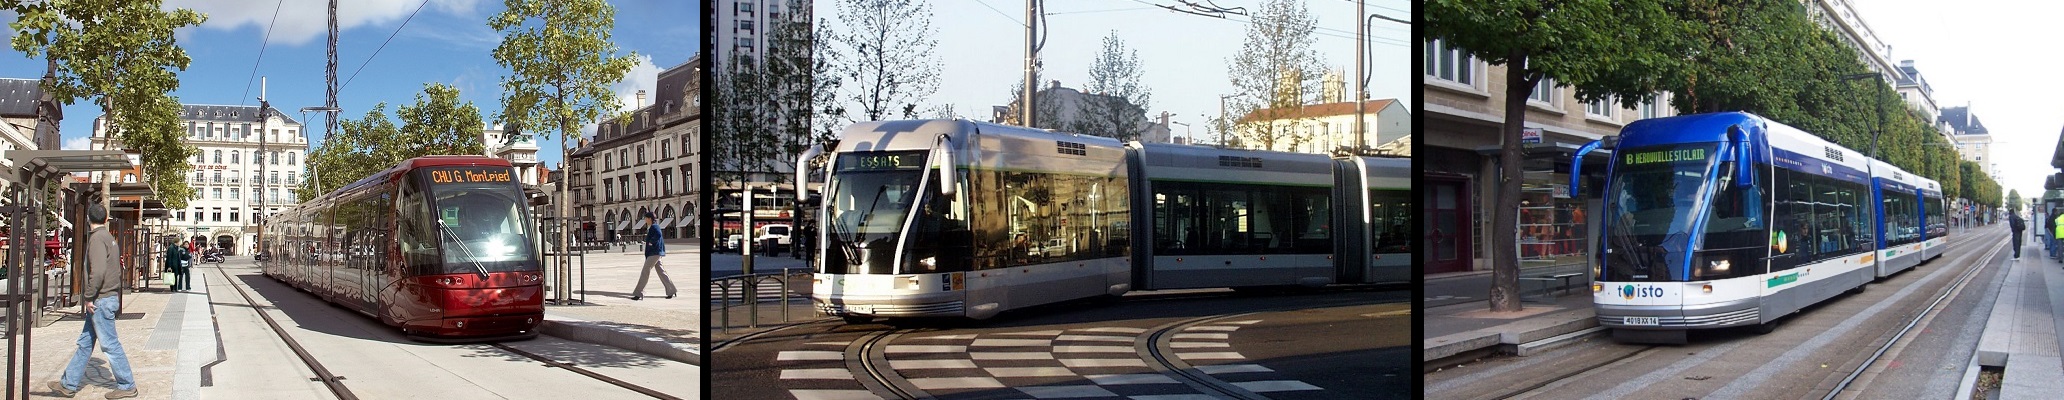 Tramways pneus Clermont-Ferrand, Nancy, Caen